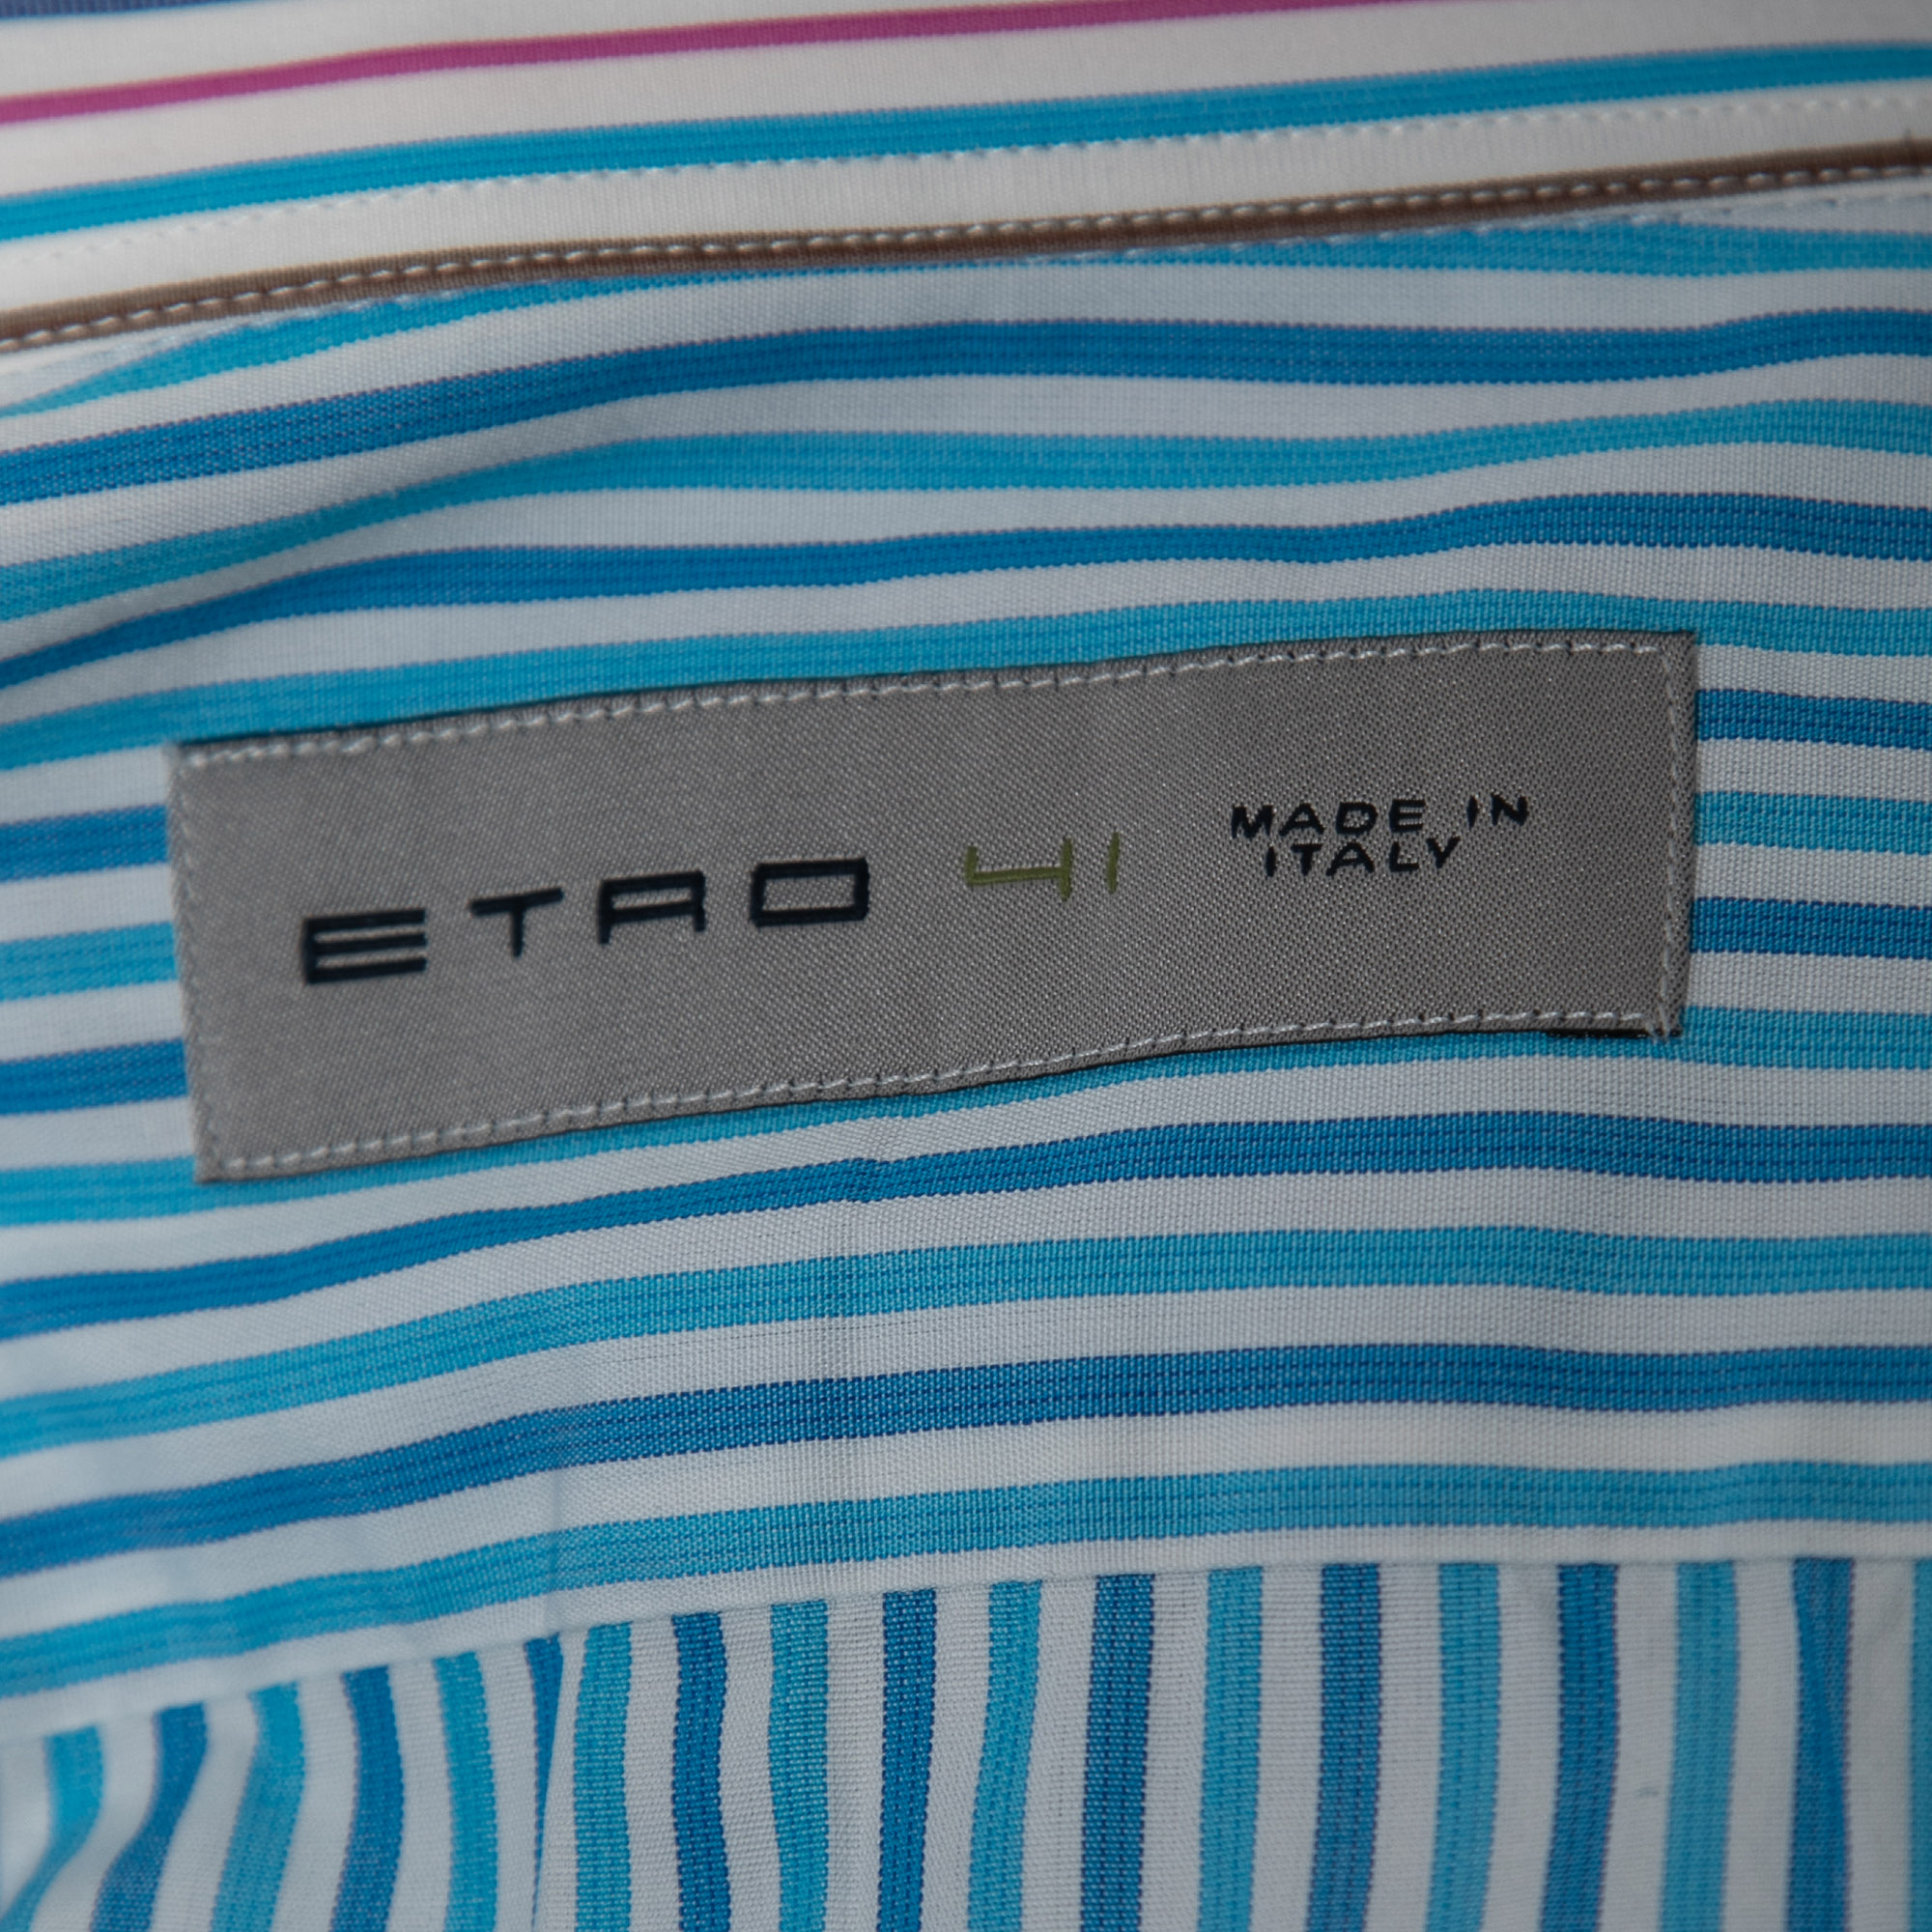 Etro Blue Multicolor Striped Cotton Button Front Shirt L